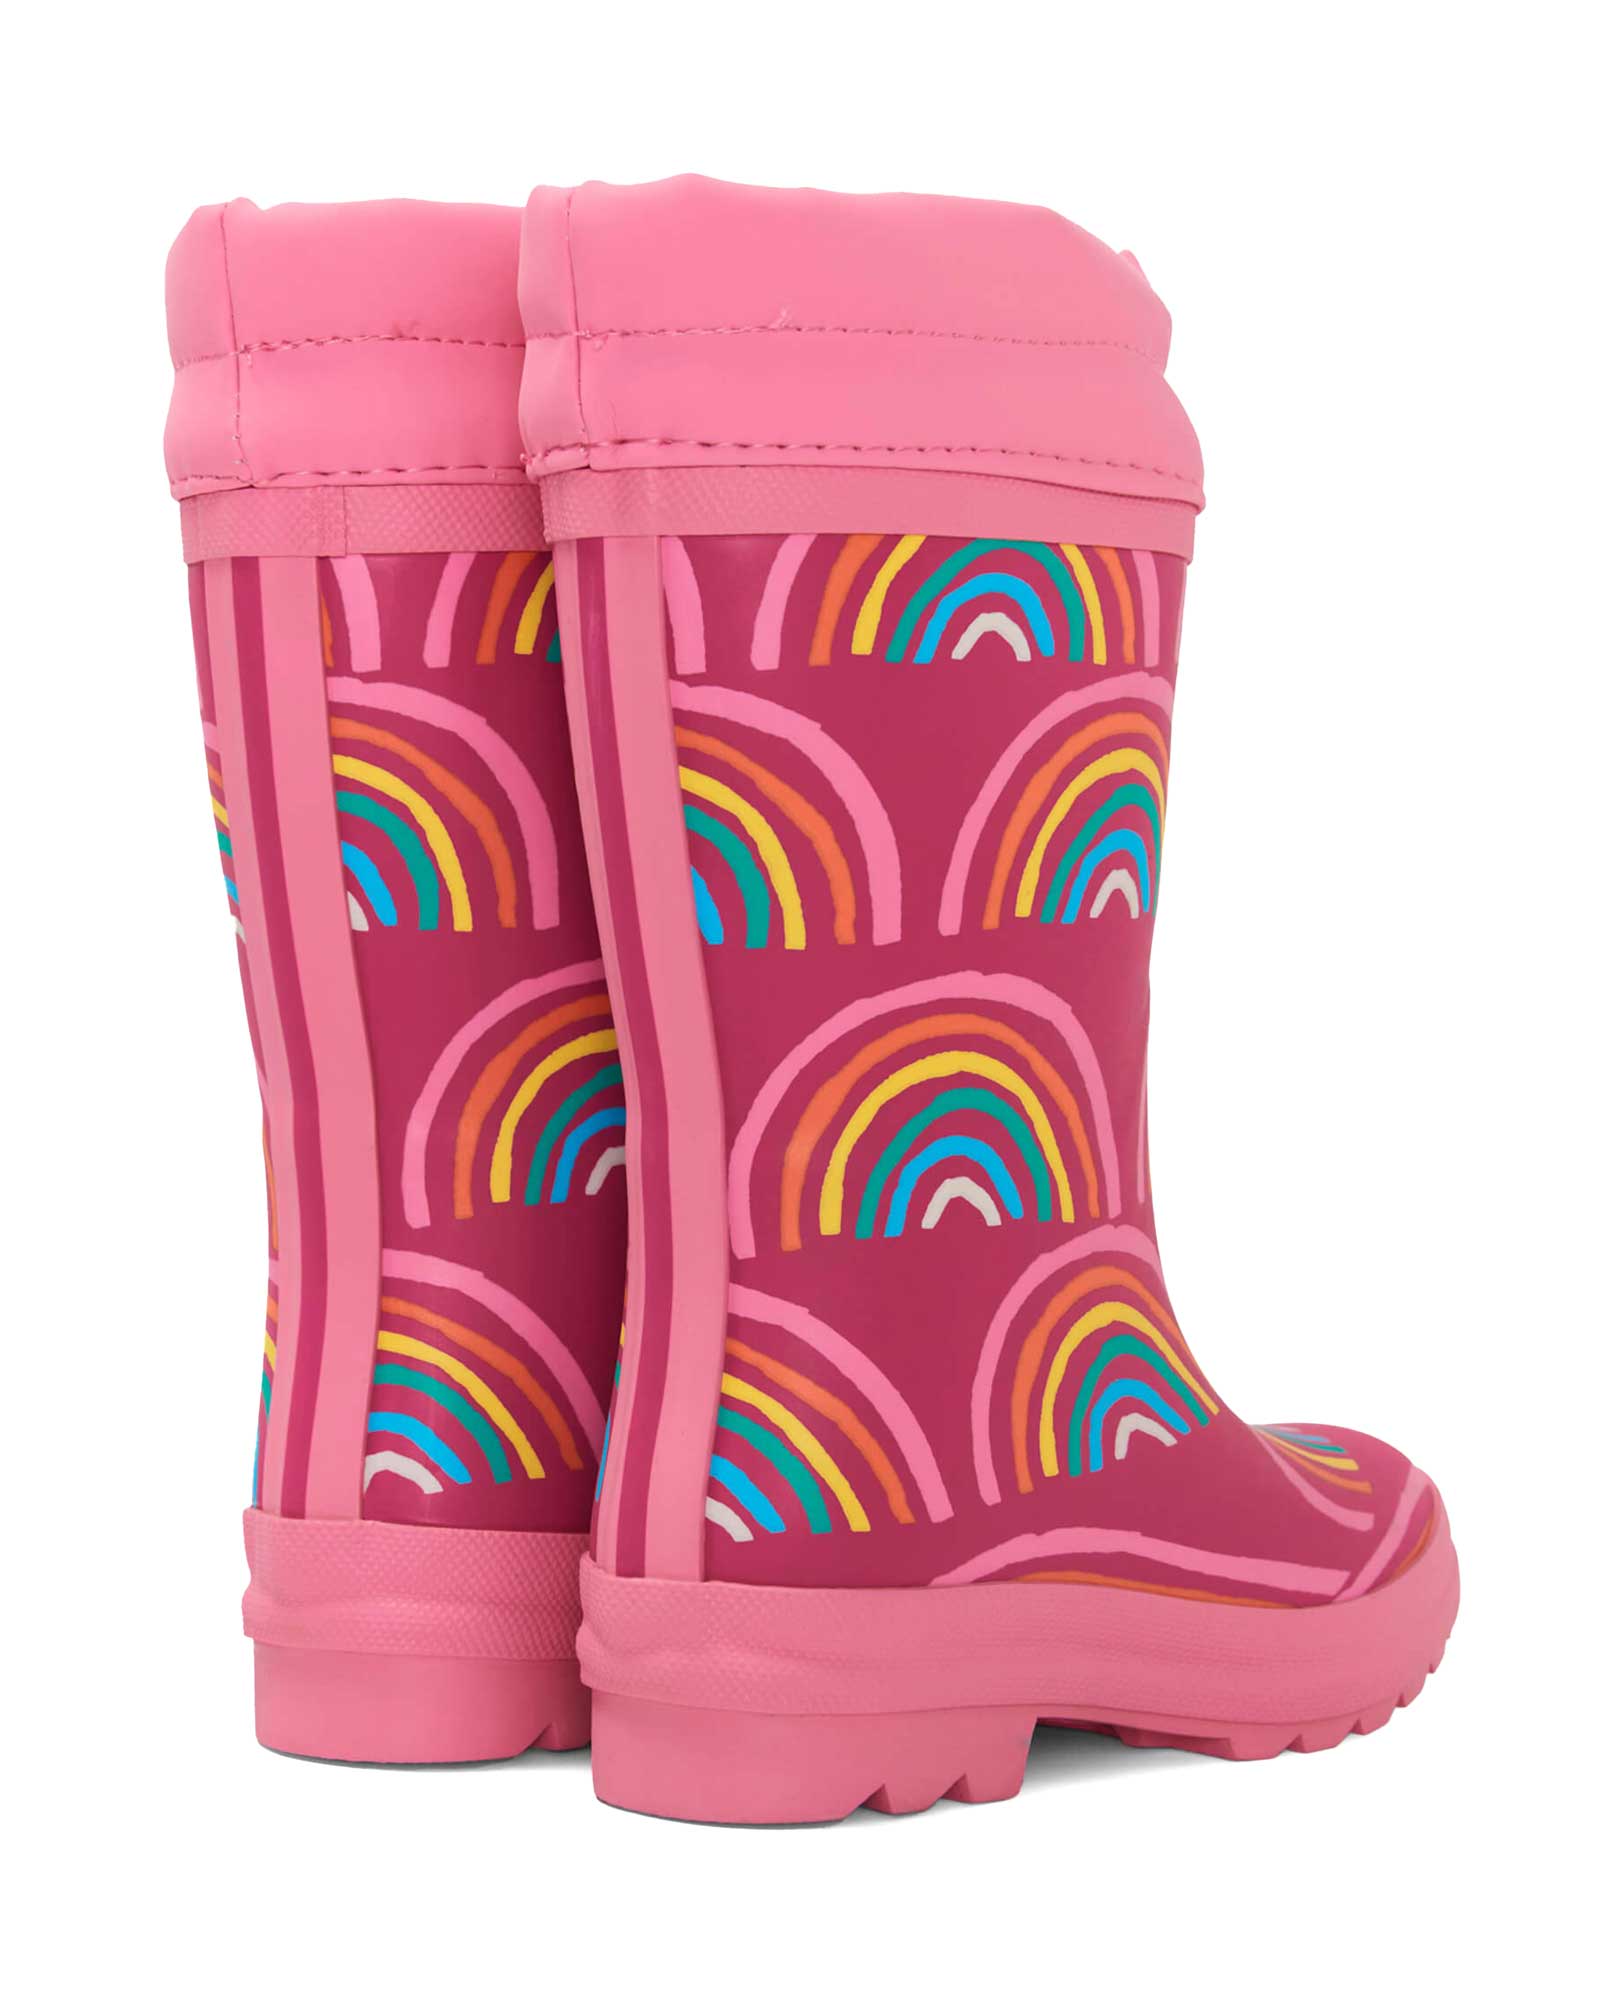 Rainy Rainbows Sherpa Lined Rain Boots